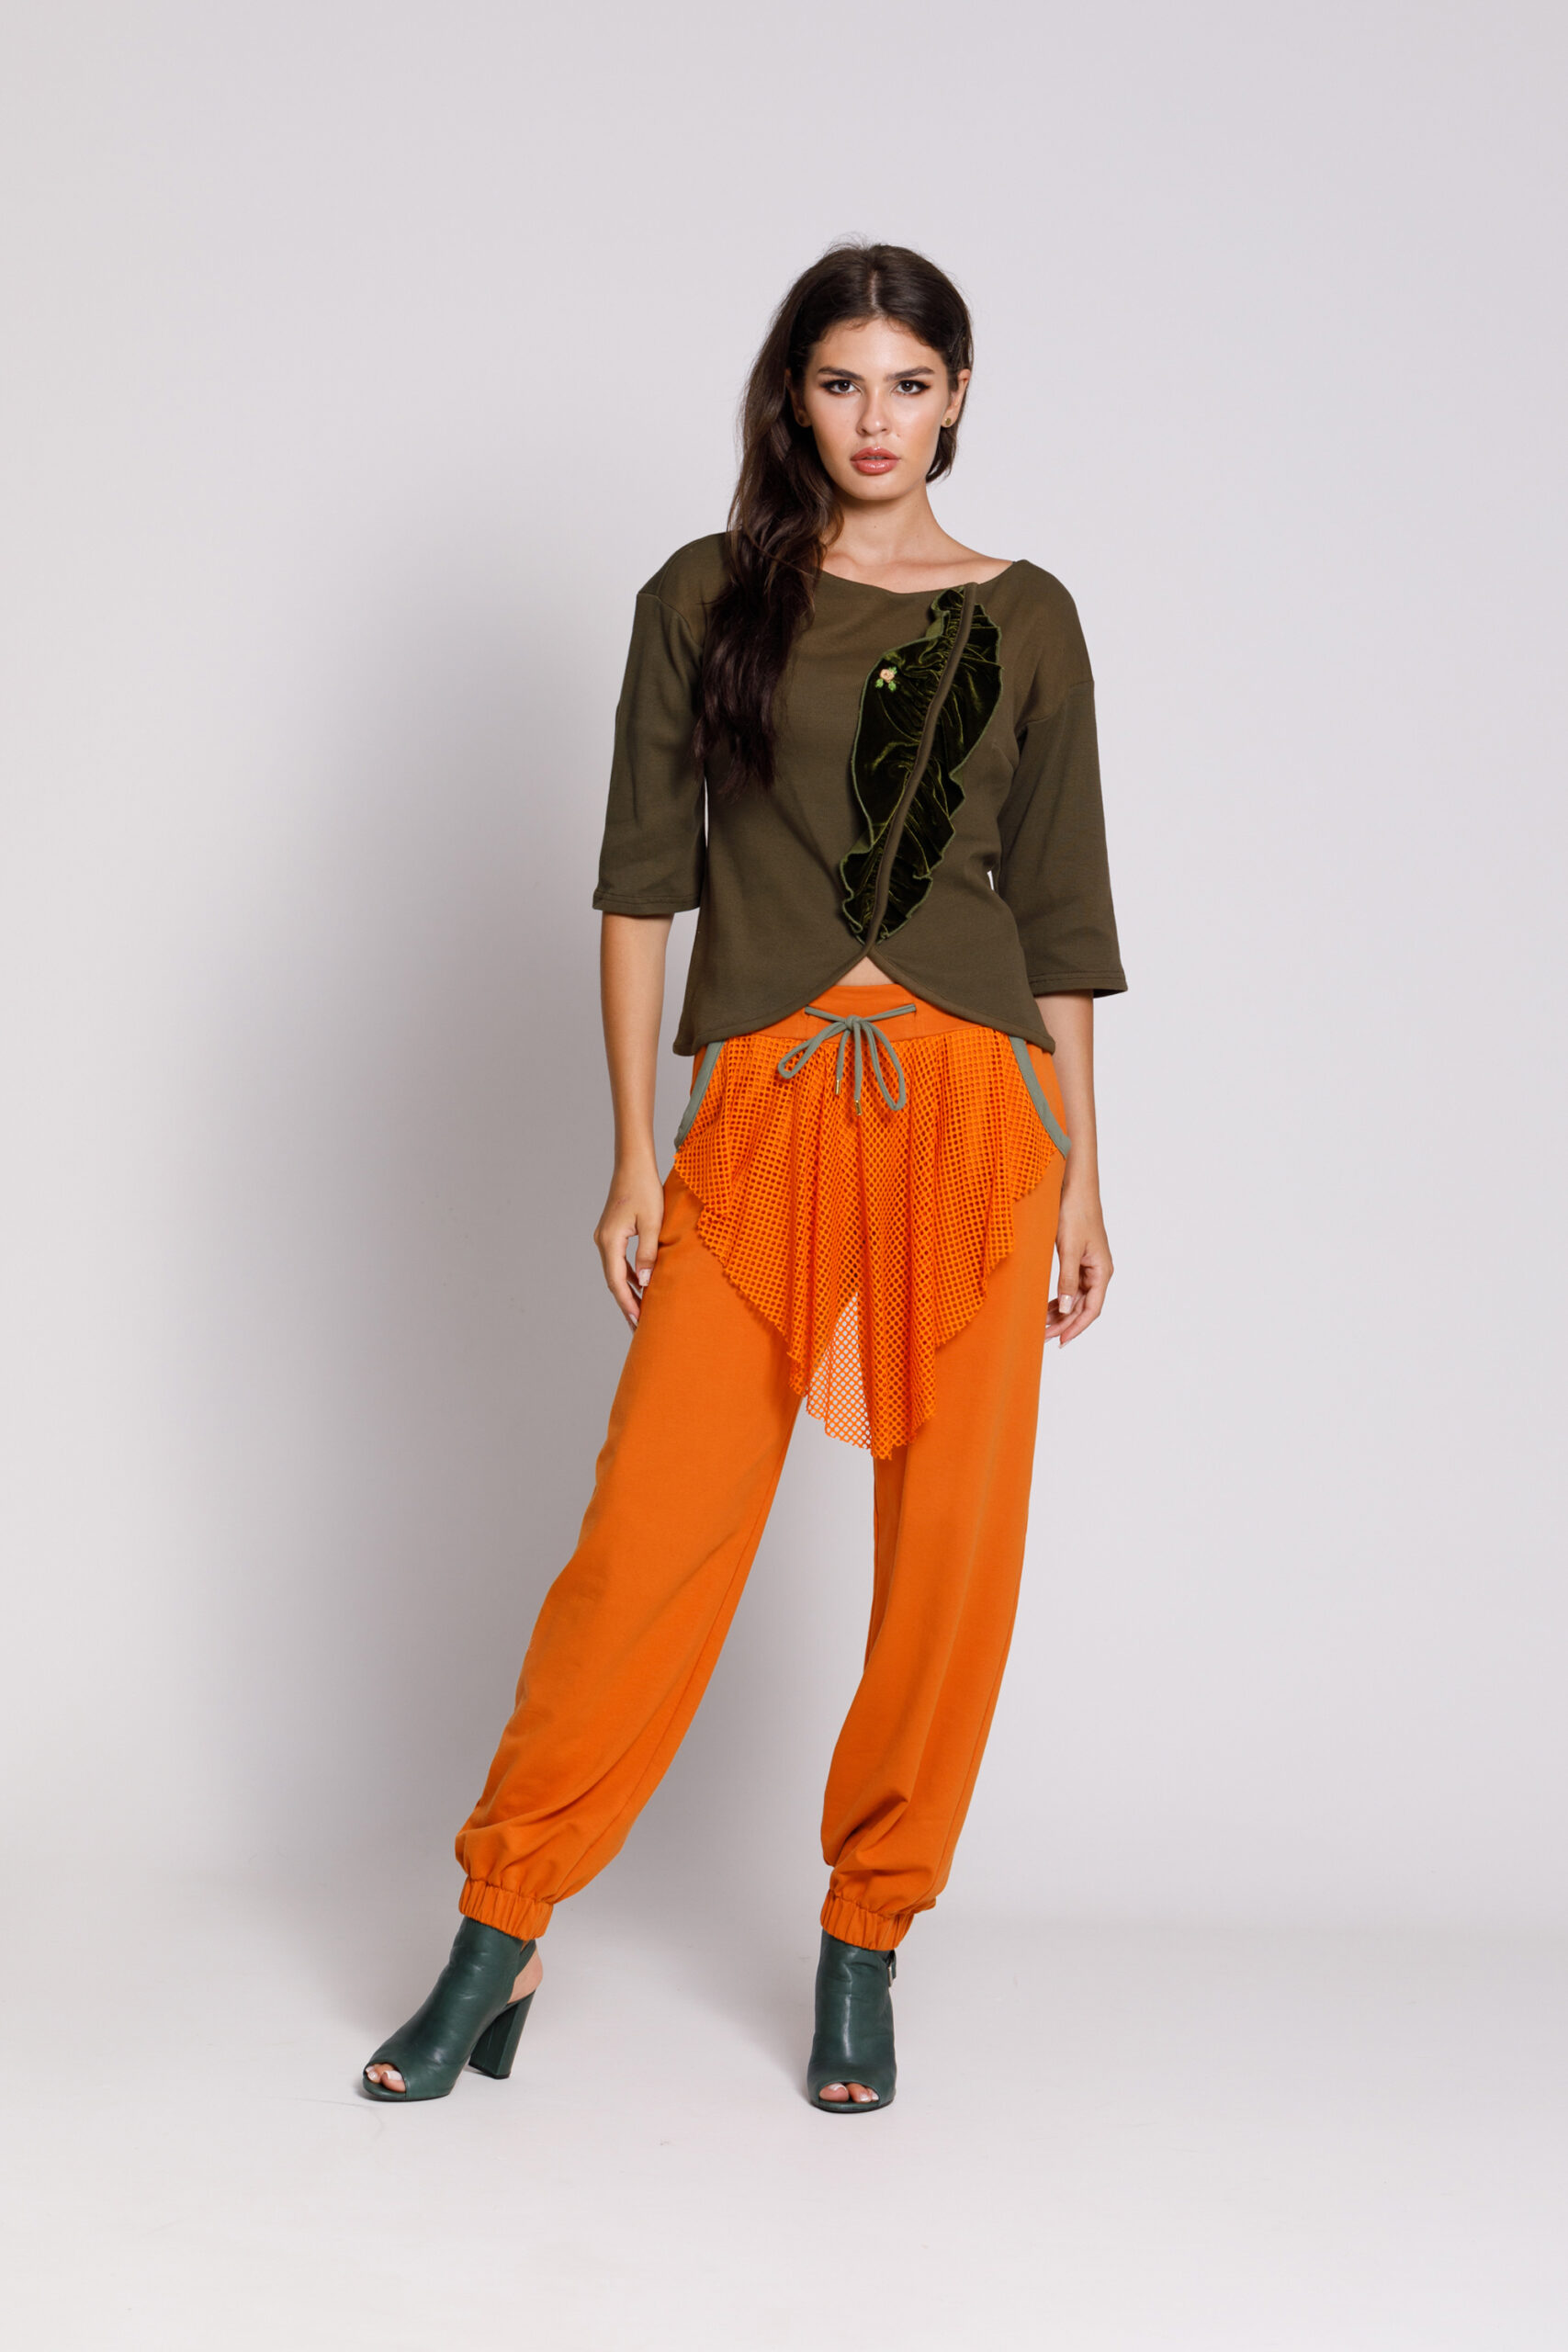 Pantalon OLARIS portocaliu din felpa. Materiale naturale, design unicat, cu broderie si aplicatii handmade